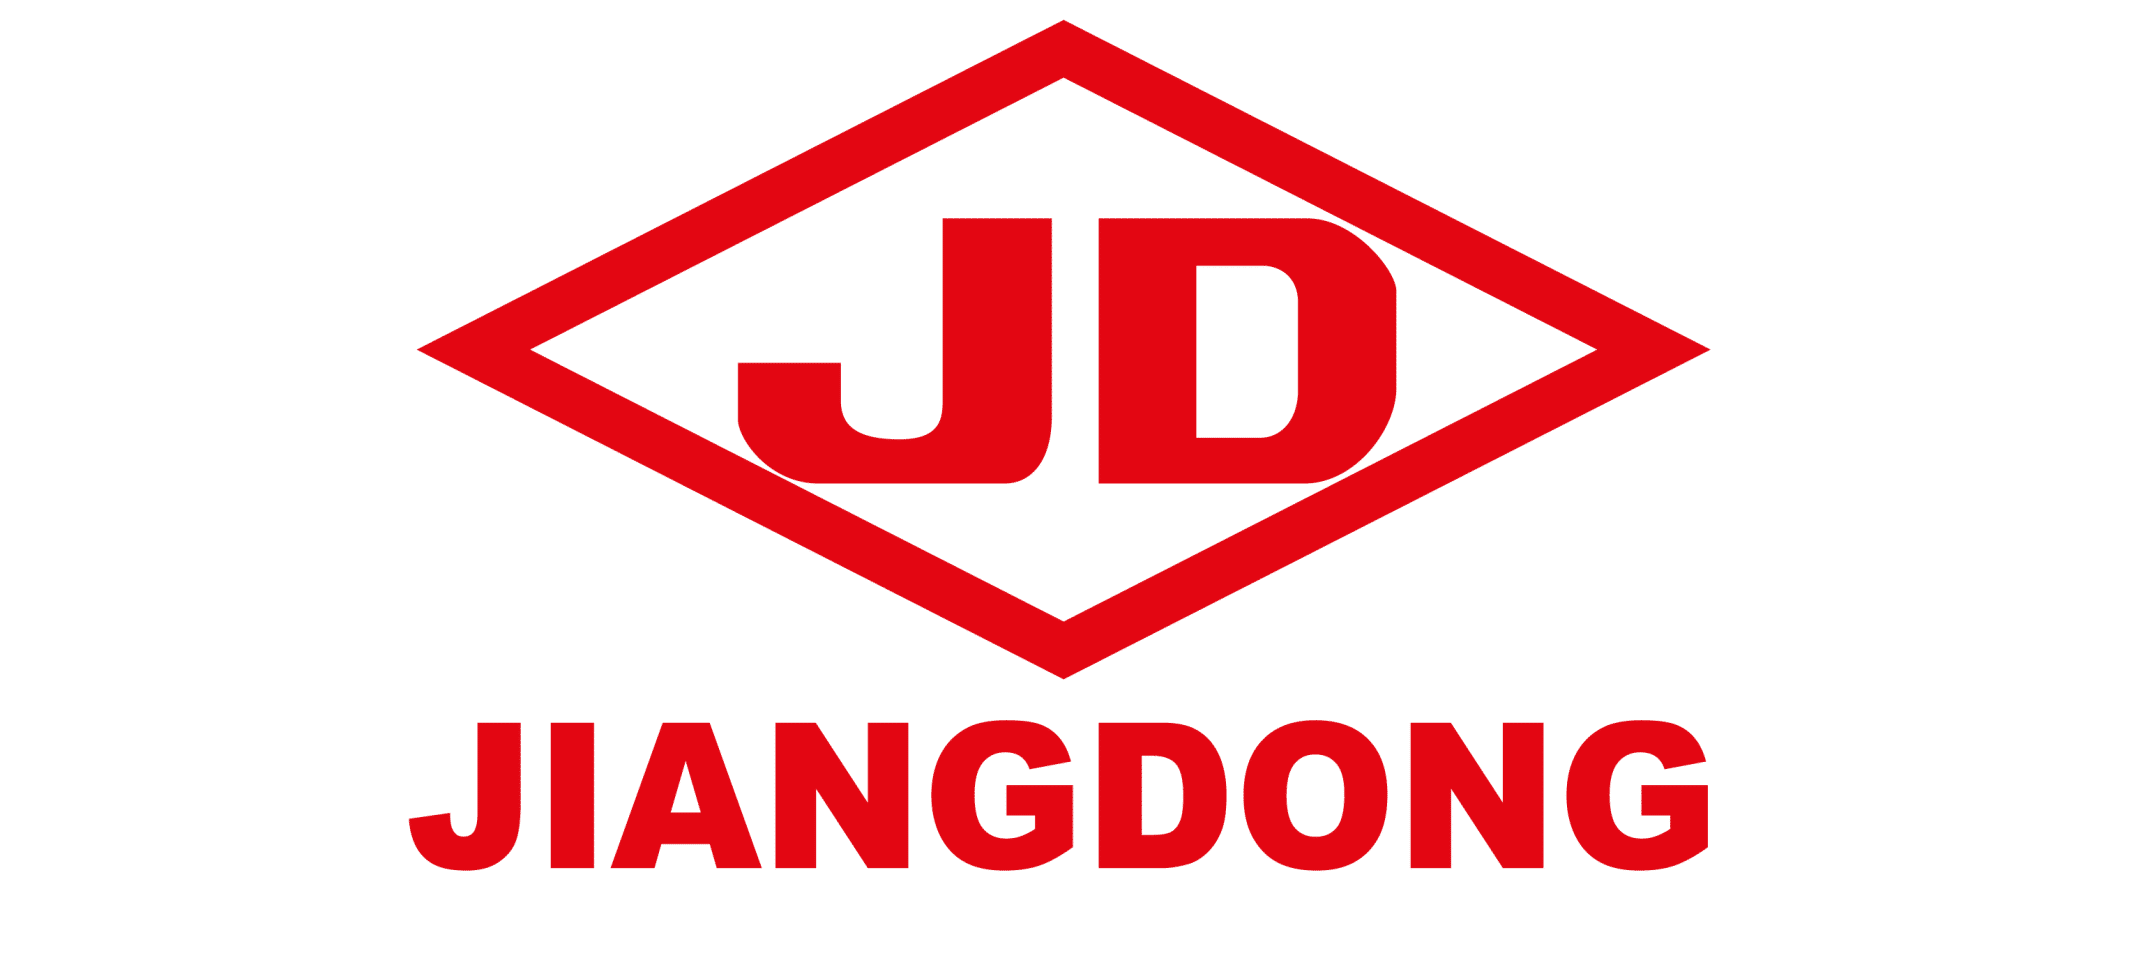 logo jiangdong-01